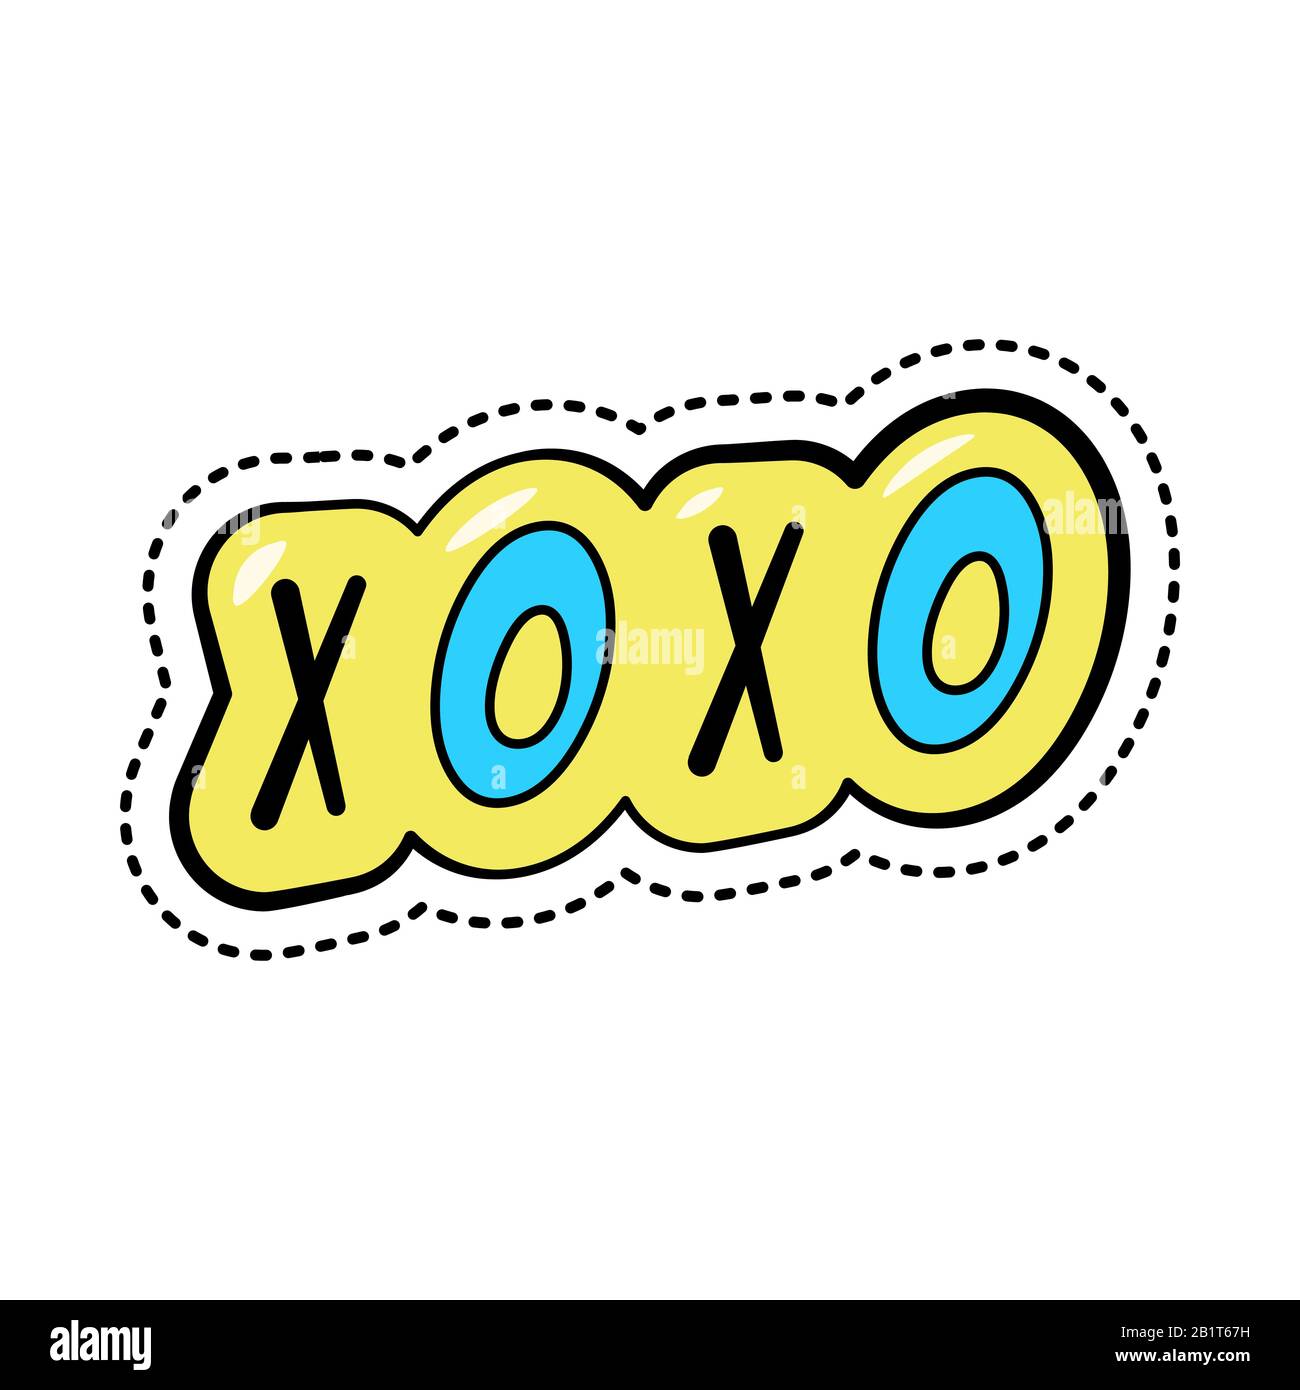 Autocollant coloré de dessin animé de mode avec du texte xoxo, badge tendance avec abréviation d'argot, illustration vectorielle. Illustration de Vecteur